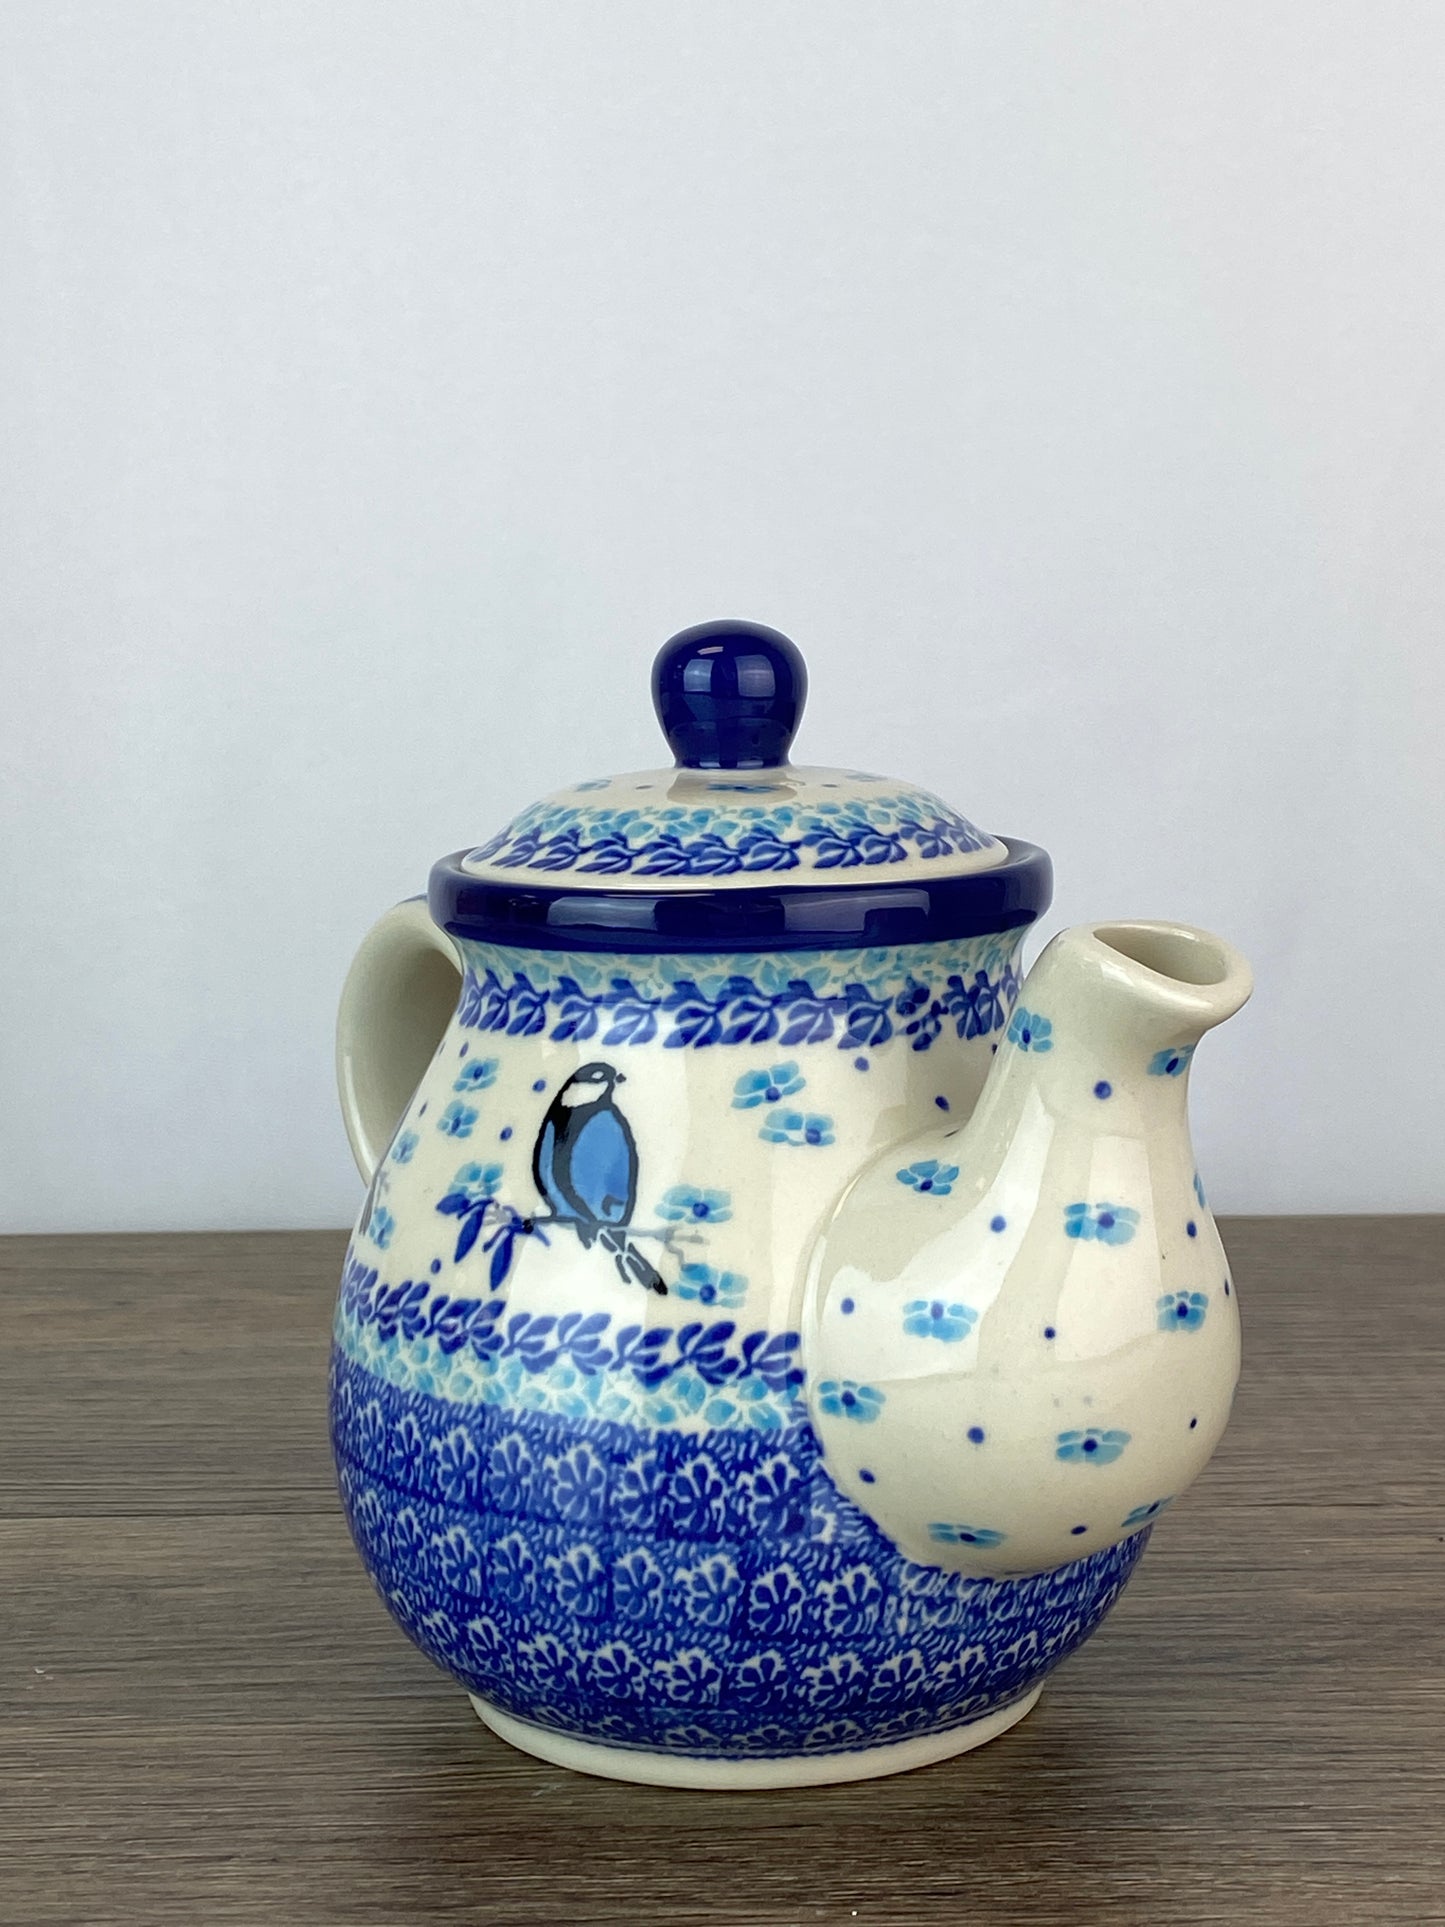 SALE 3 Cup Teapot - Shape 119 - Pattern 2679